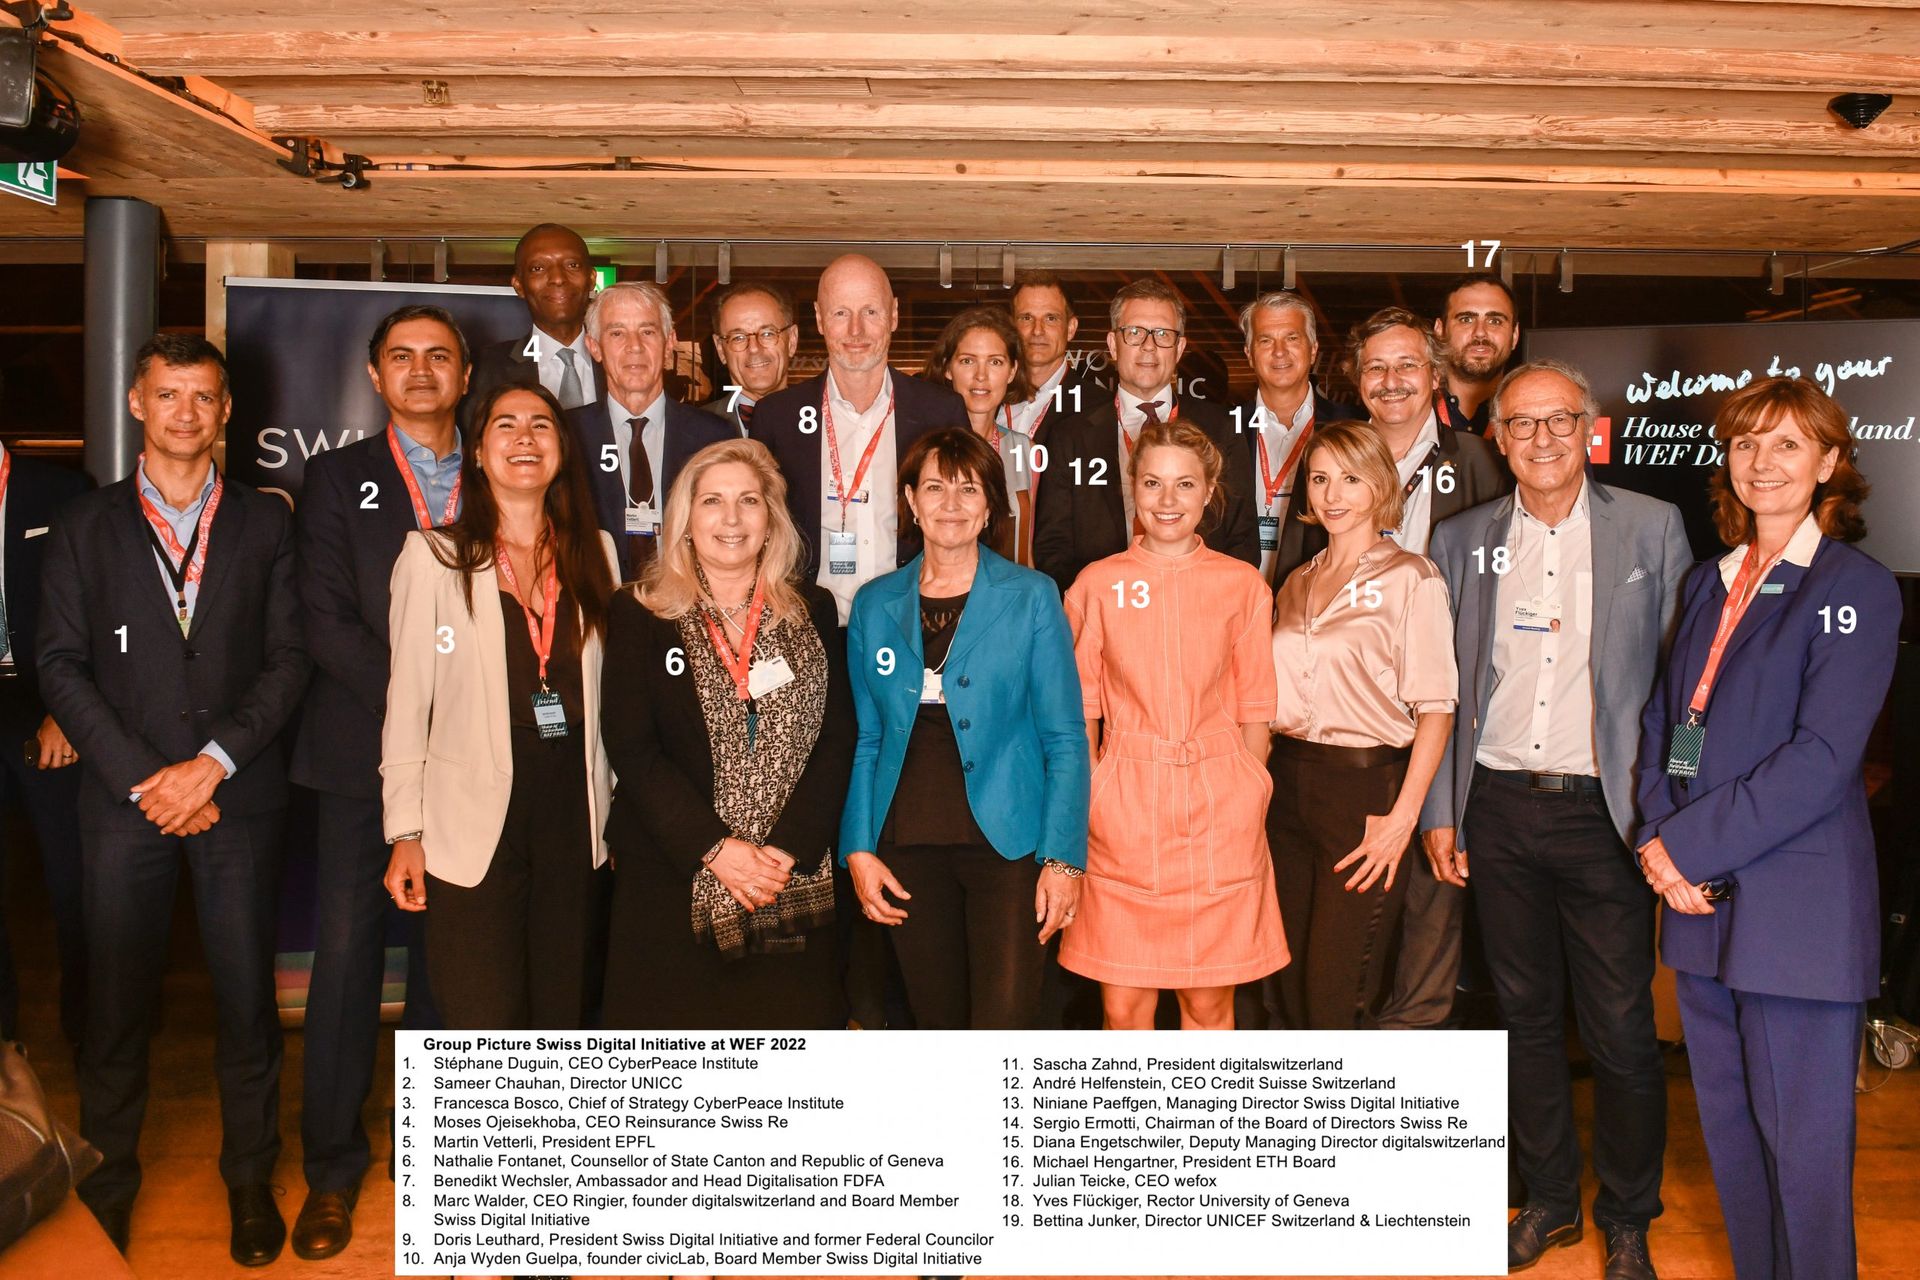 Visoke švicarske i međunarodne osobe na predstavljanju "Digital Trust Label" na Svjetskom gospodarskom forumu 2022. u Davosu (s brojevima označenim imenima)